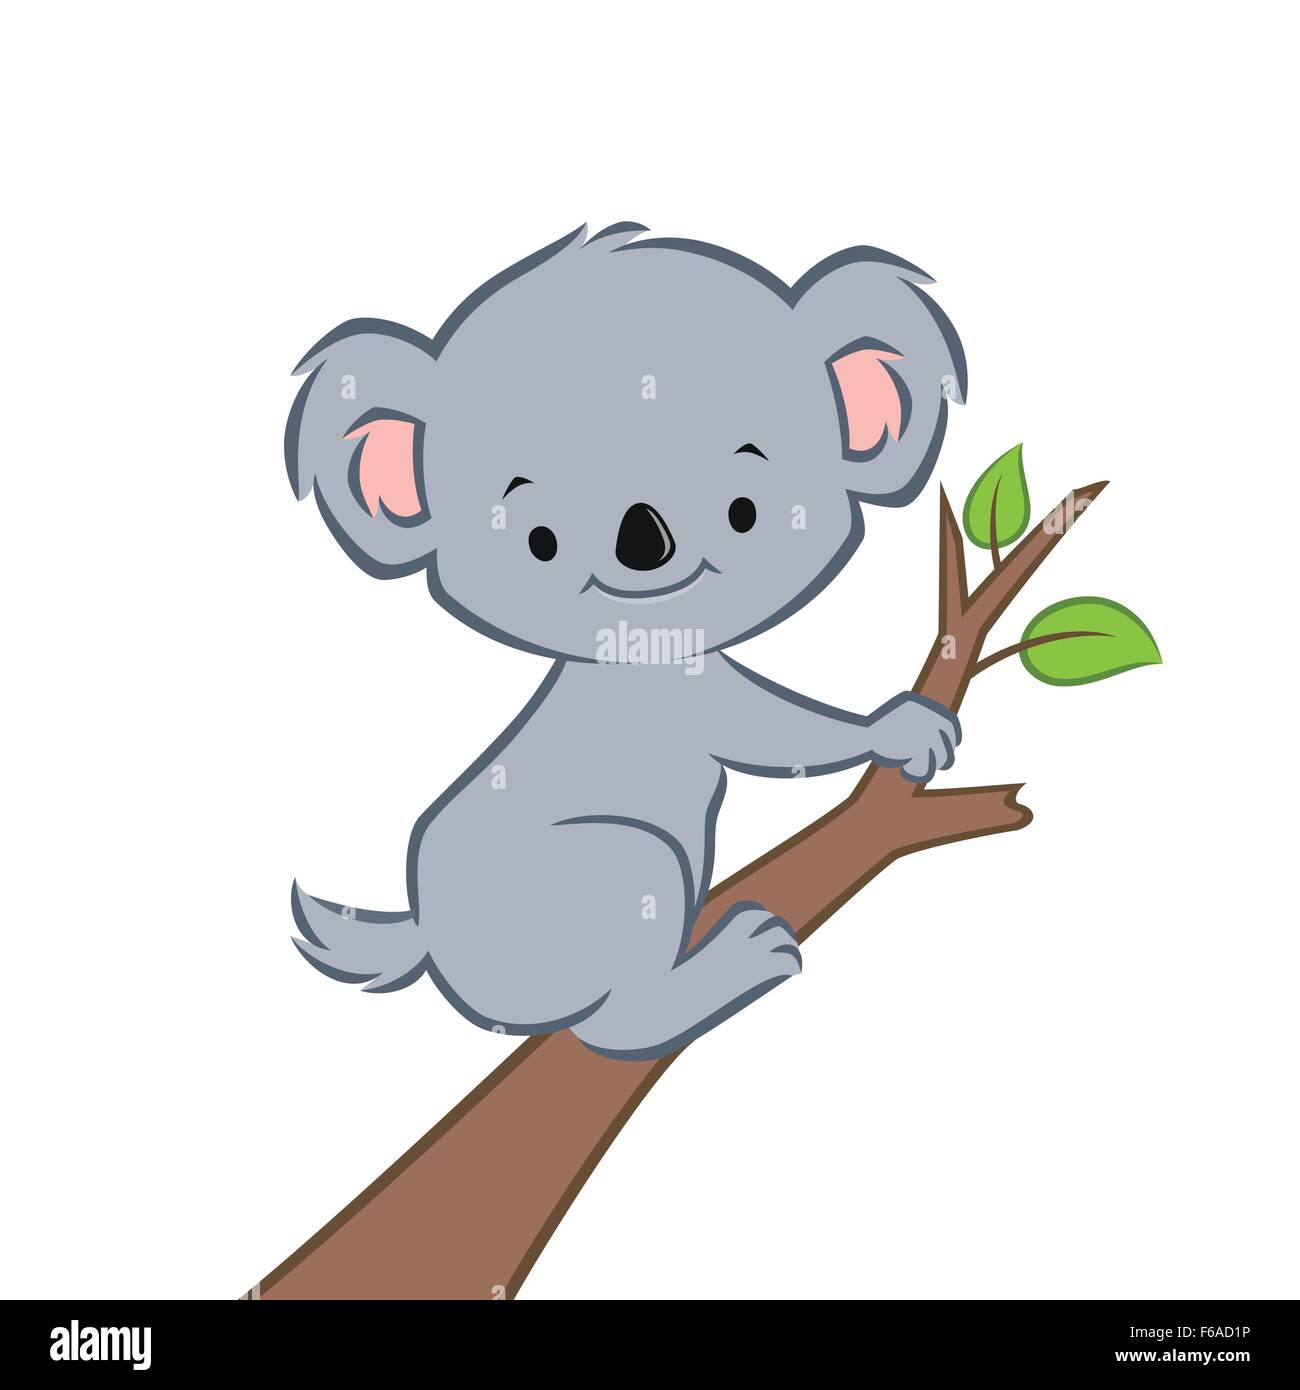 free clipart koala bear cartoon - photo #30